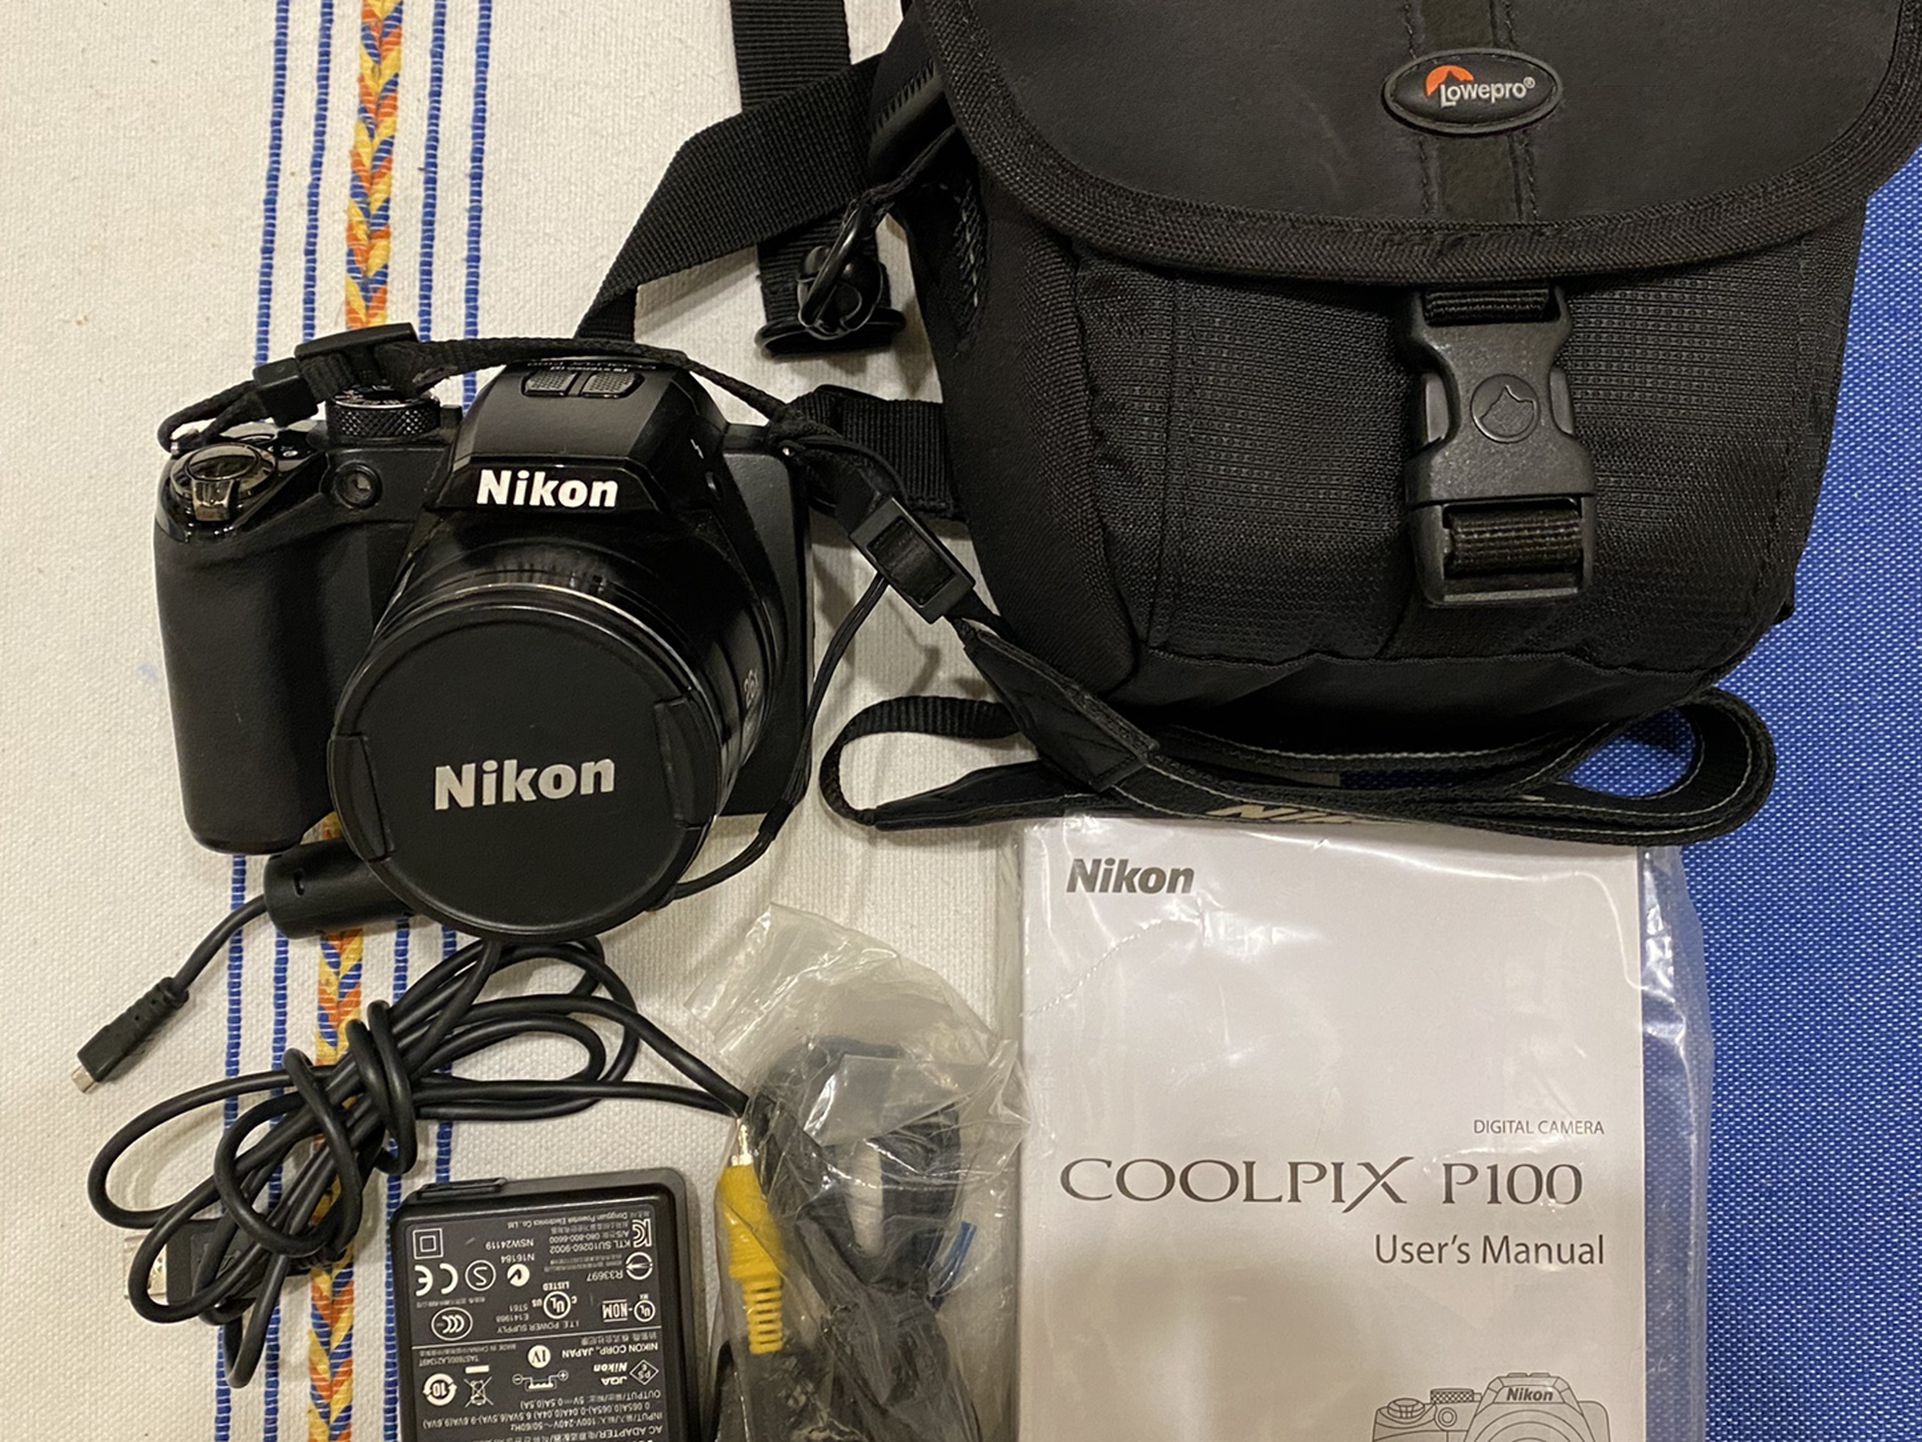 Nikon Coolpix P100 Digital Camera